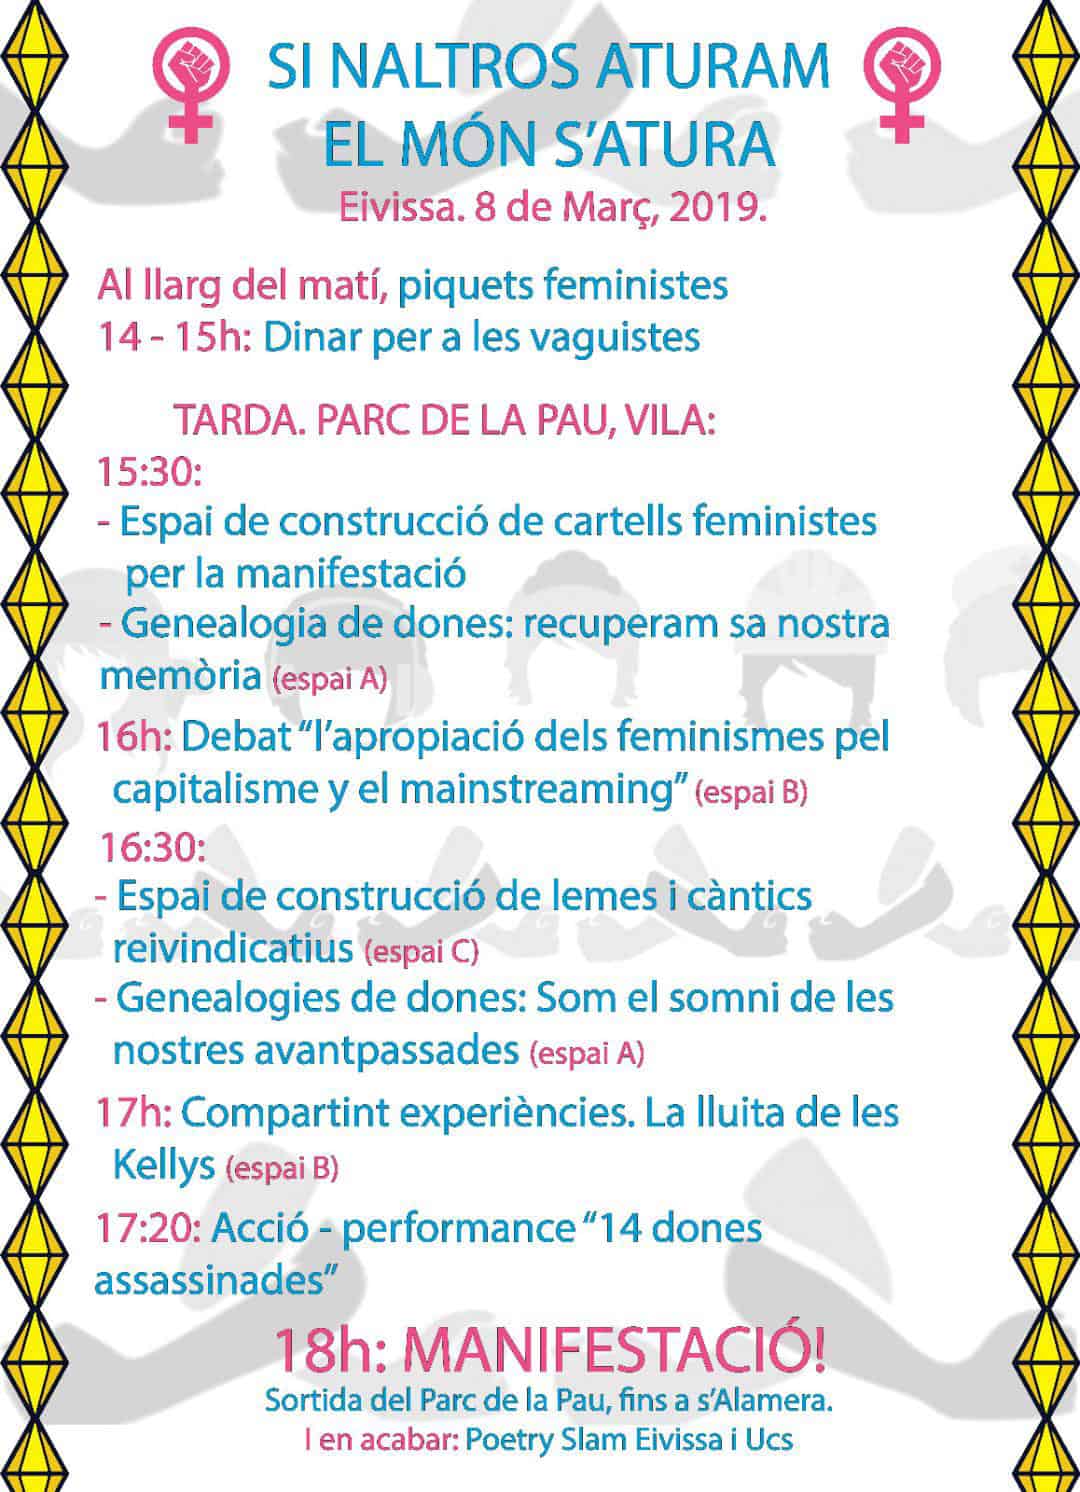 Jornada de Huelga Feminista en Ibiza por el 8M- programa huelga feminista 8 marzo 2019 ibiza welcometoibiza